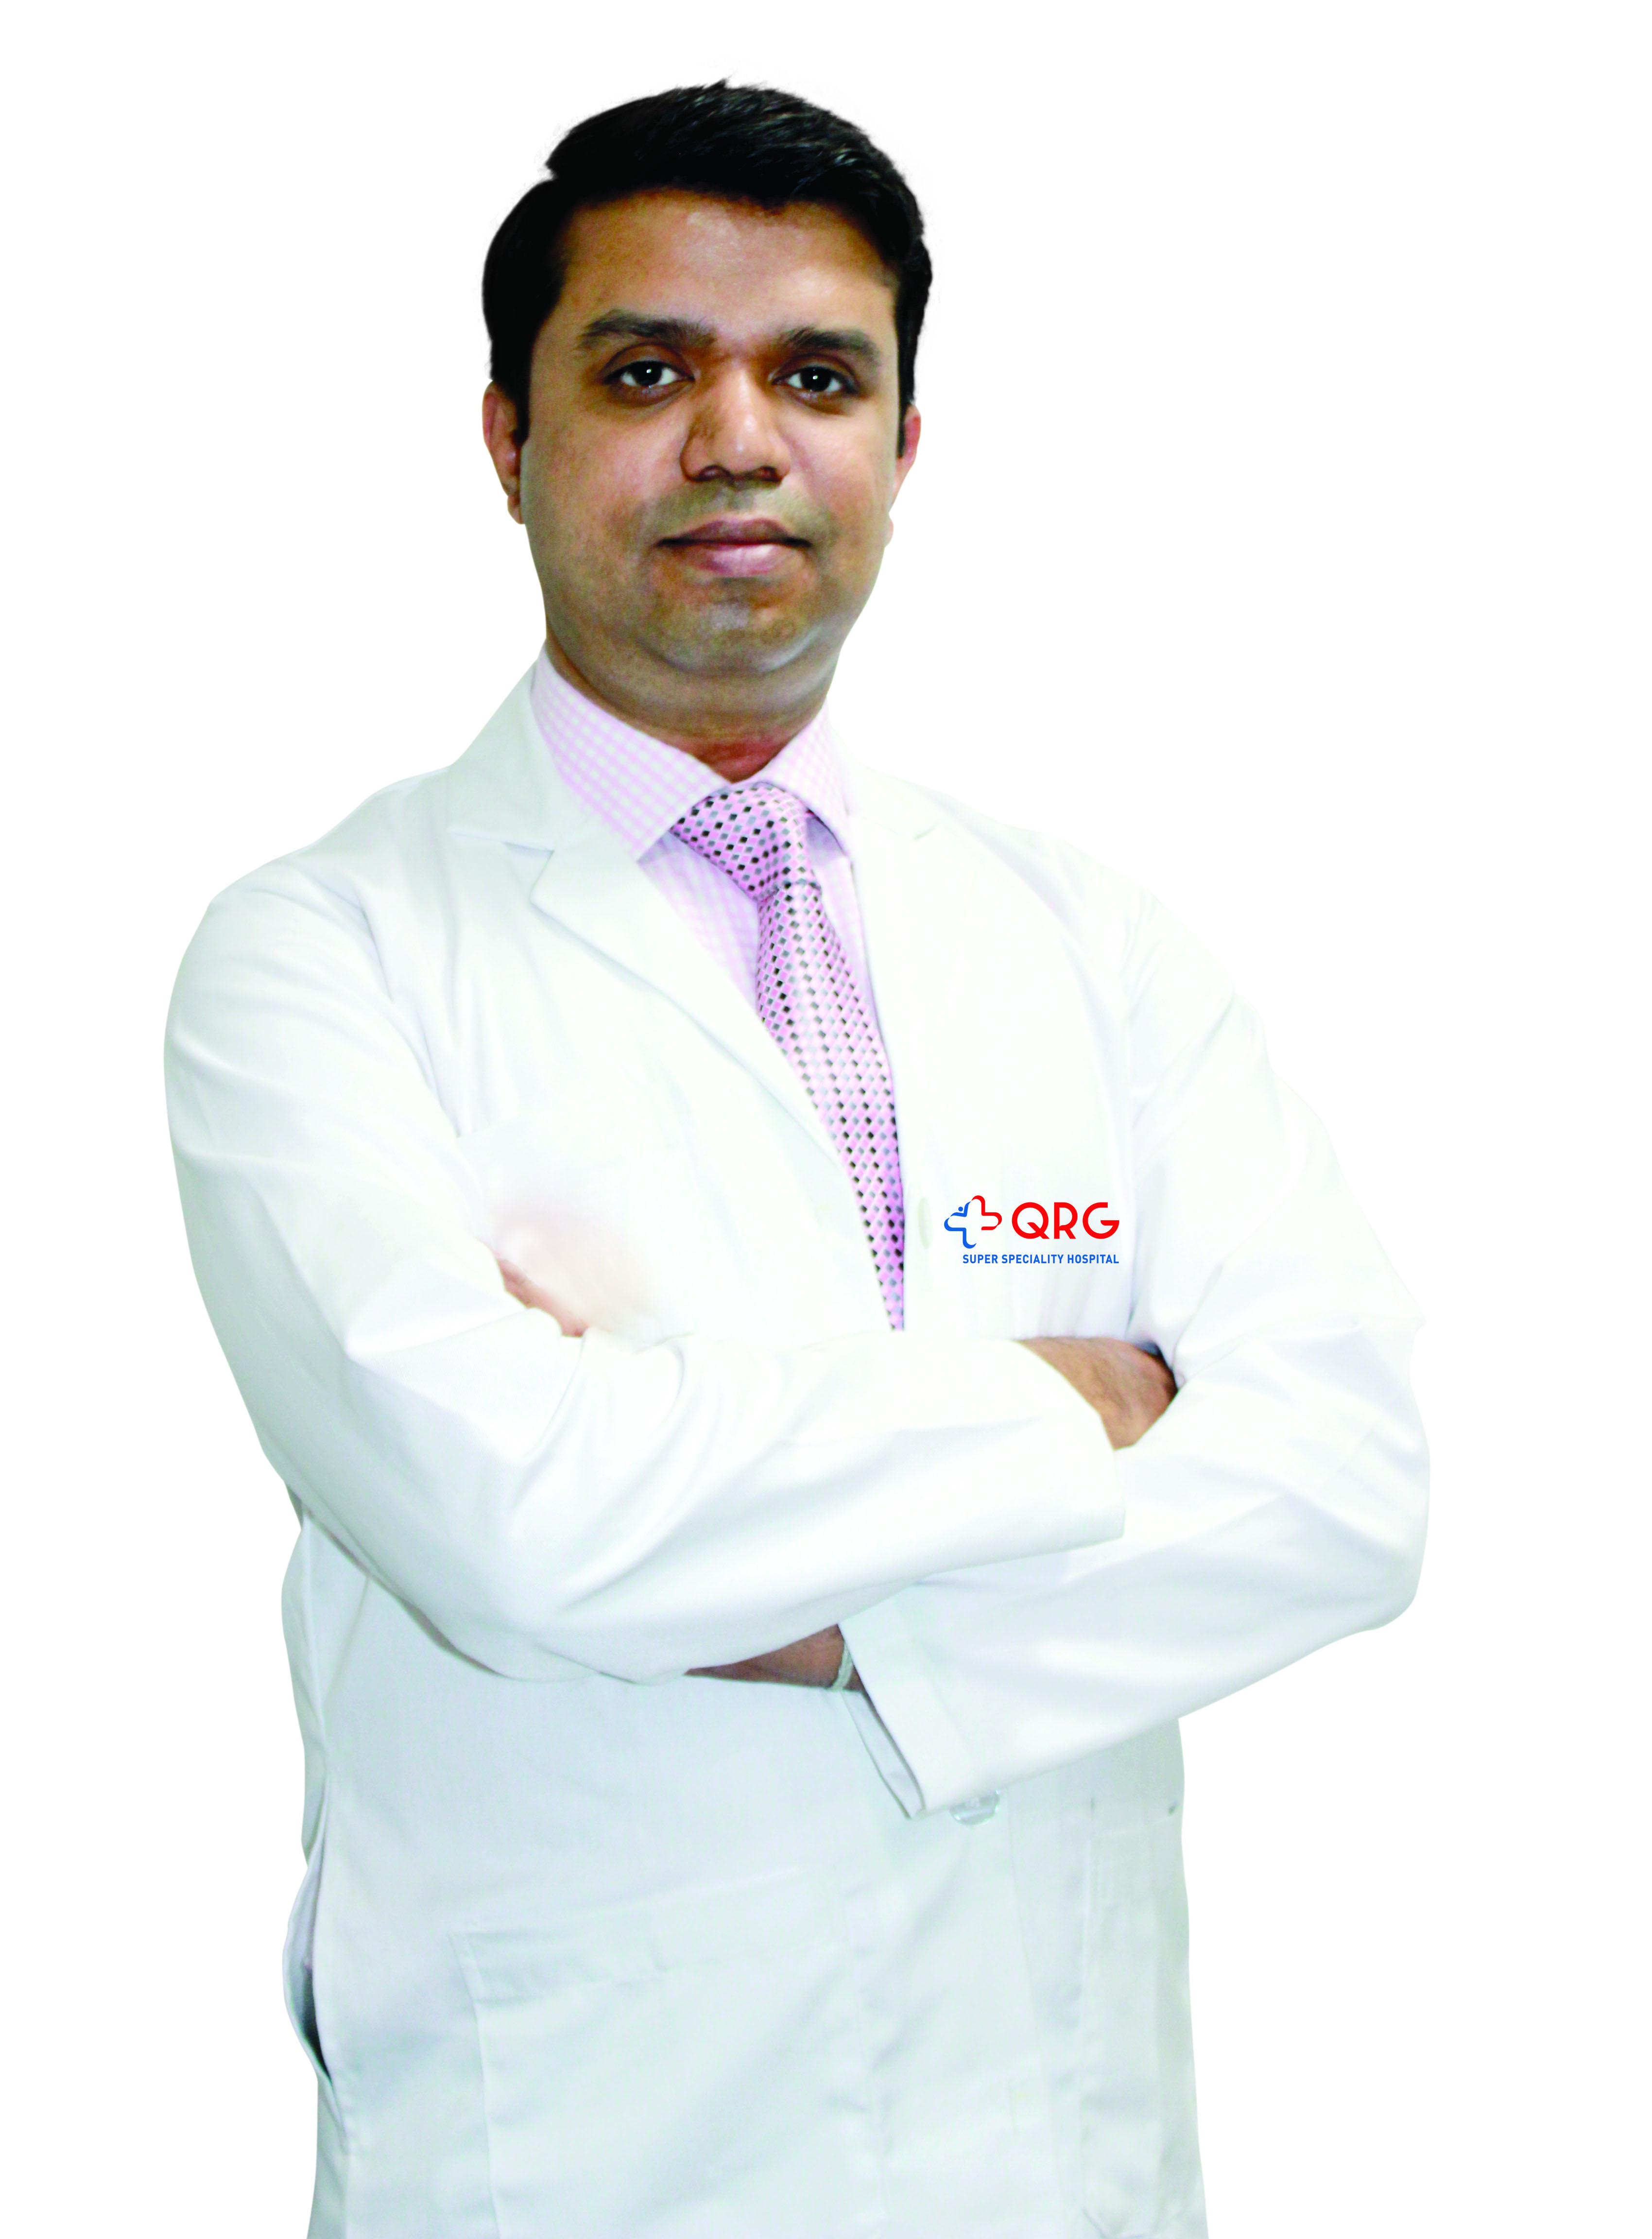 Dr. Manish Kumar Choudhary